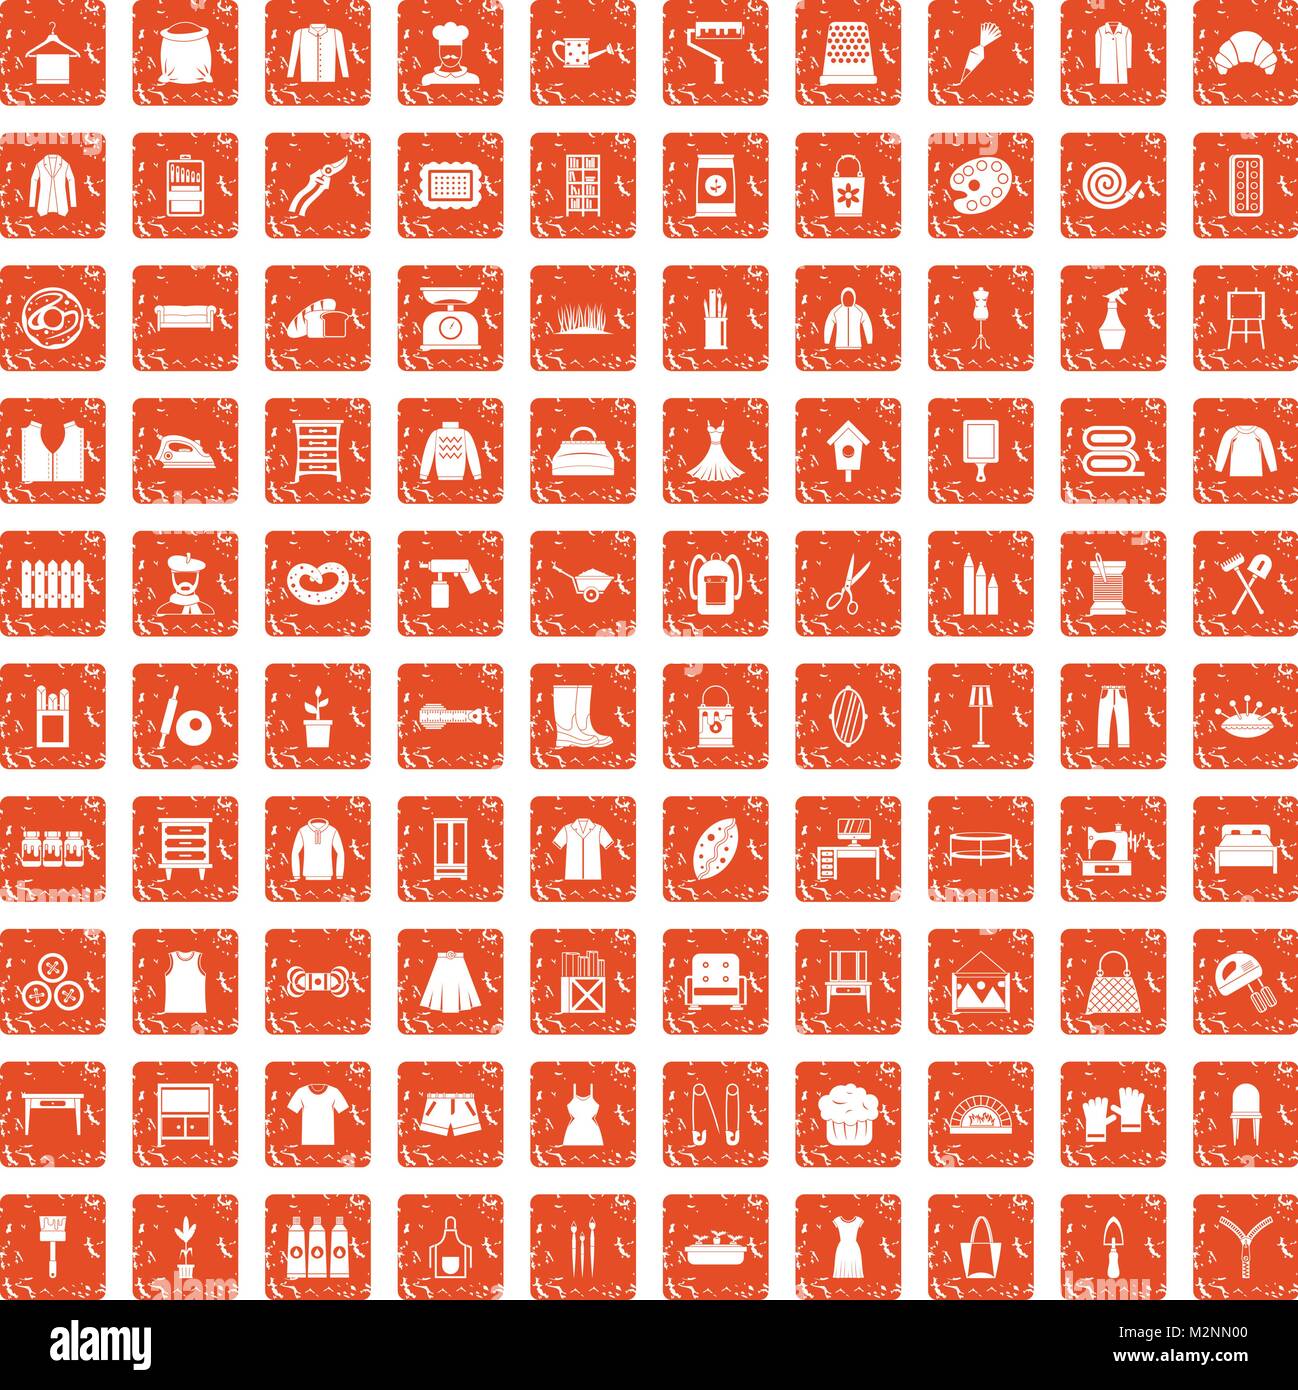 100 Handarbeit Icons Set grunge orange Stock Vektor